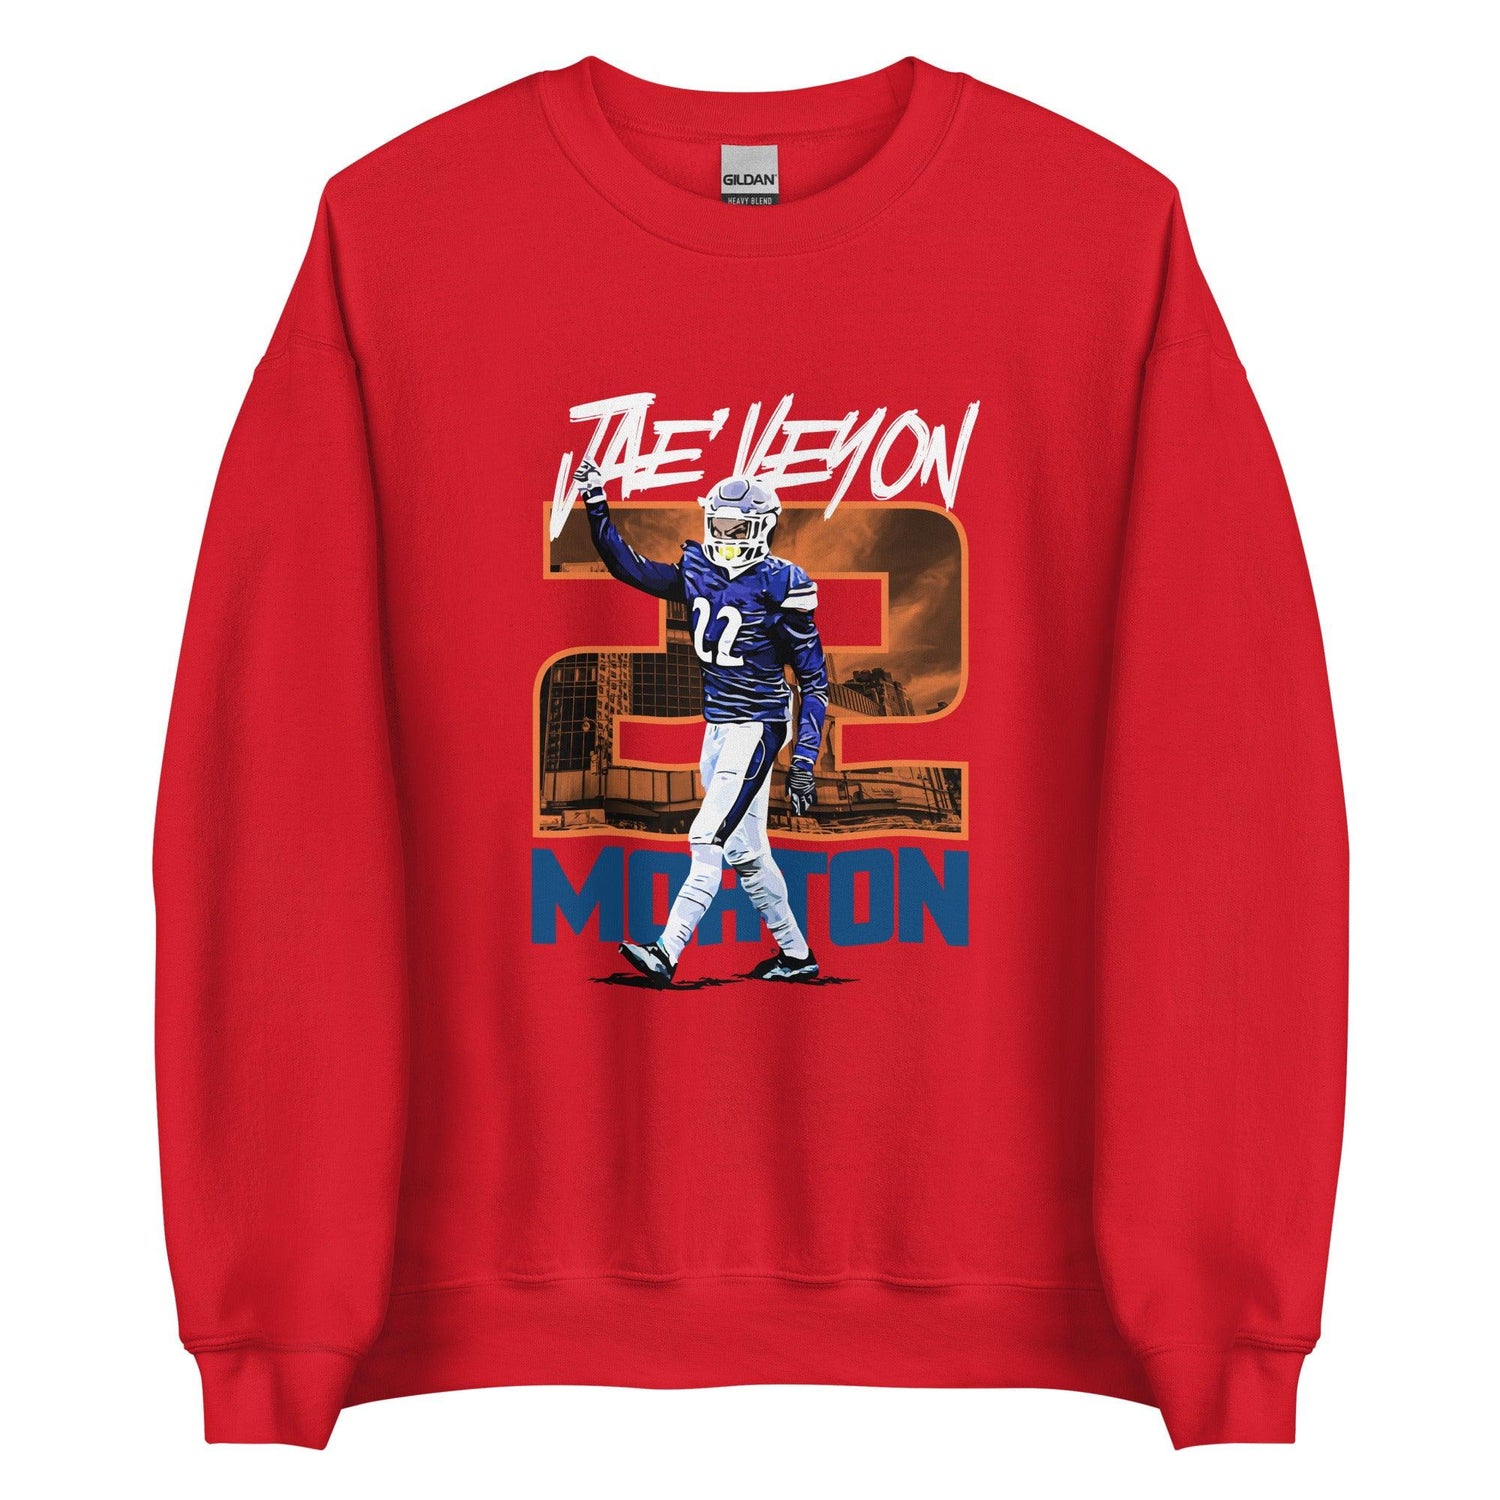 Jae’Veyon Morton "Gameday" Sweatshirt - Fan Arch